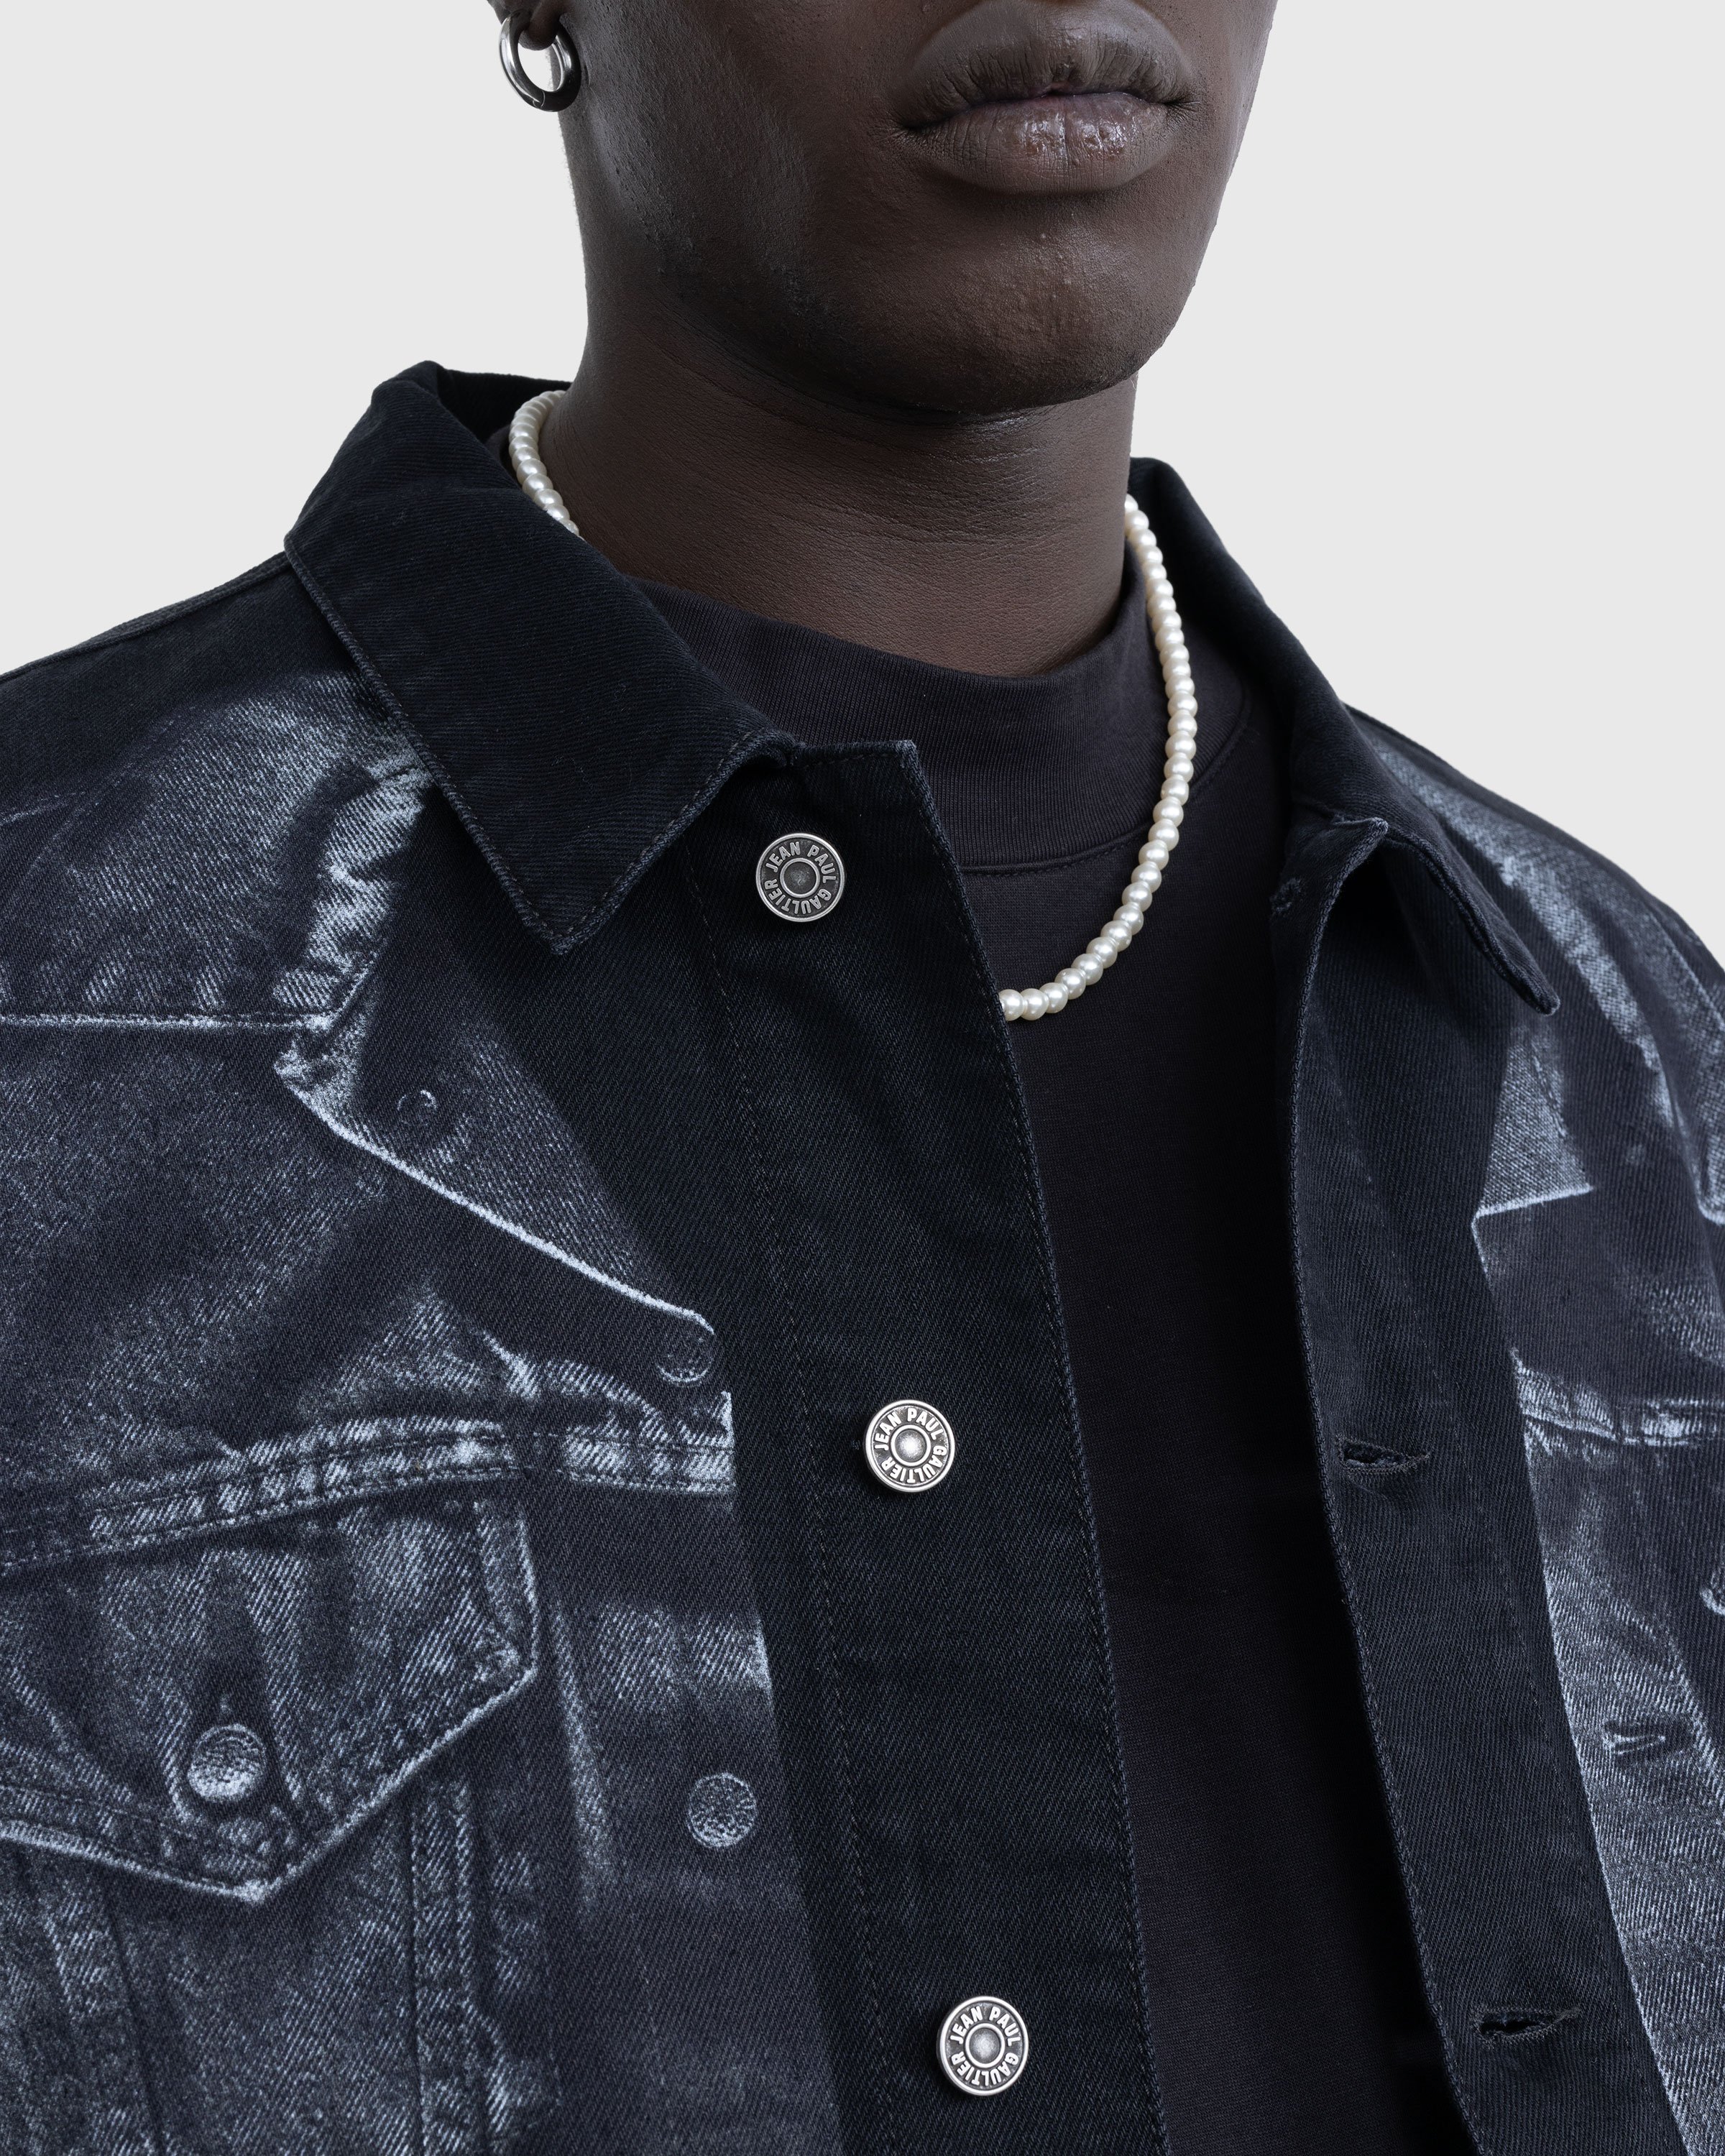 Jean Paul Gaultier - Trompe L'œil Denim Jacket Black - Clothing - Black - Image 5